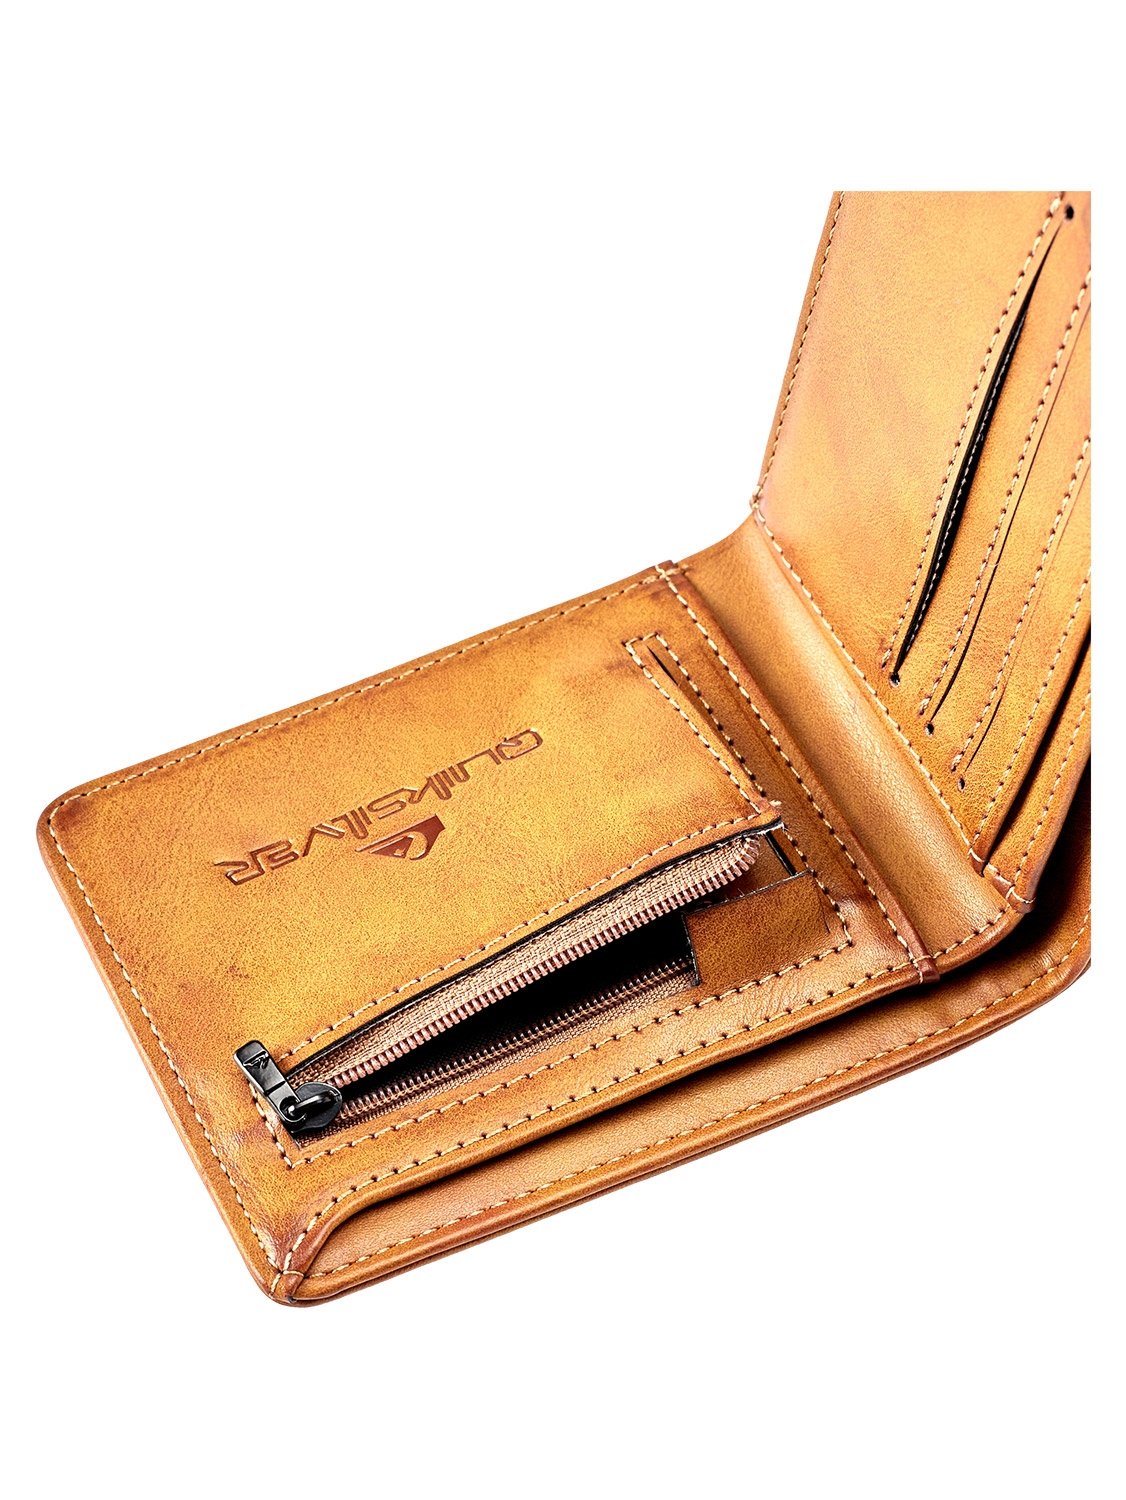 Quiksilver Men's Slim Rays Wallet